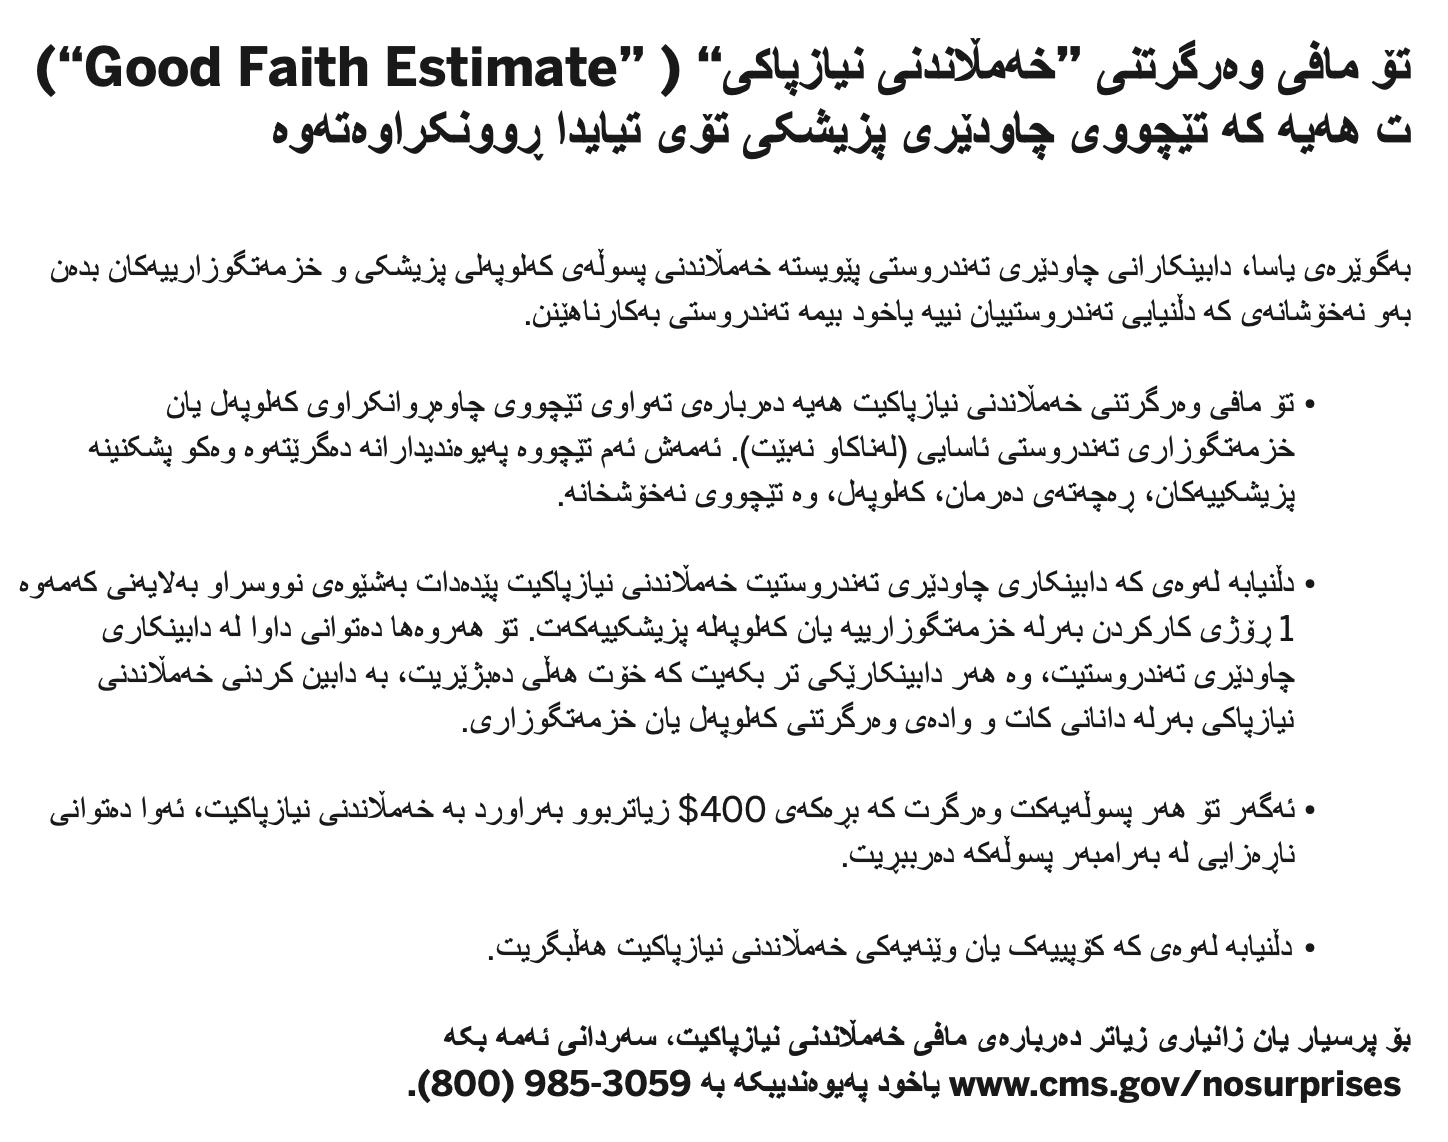 Good Faith Estimate - Sorani